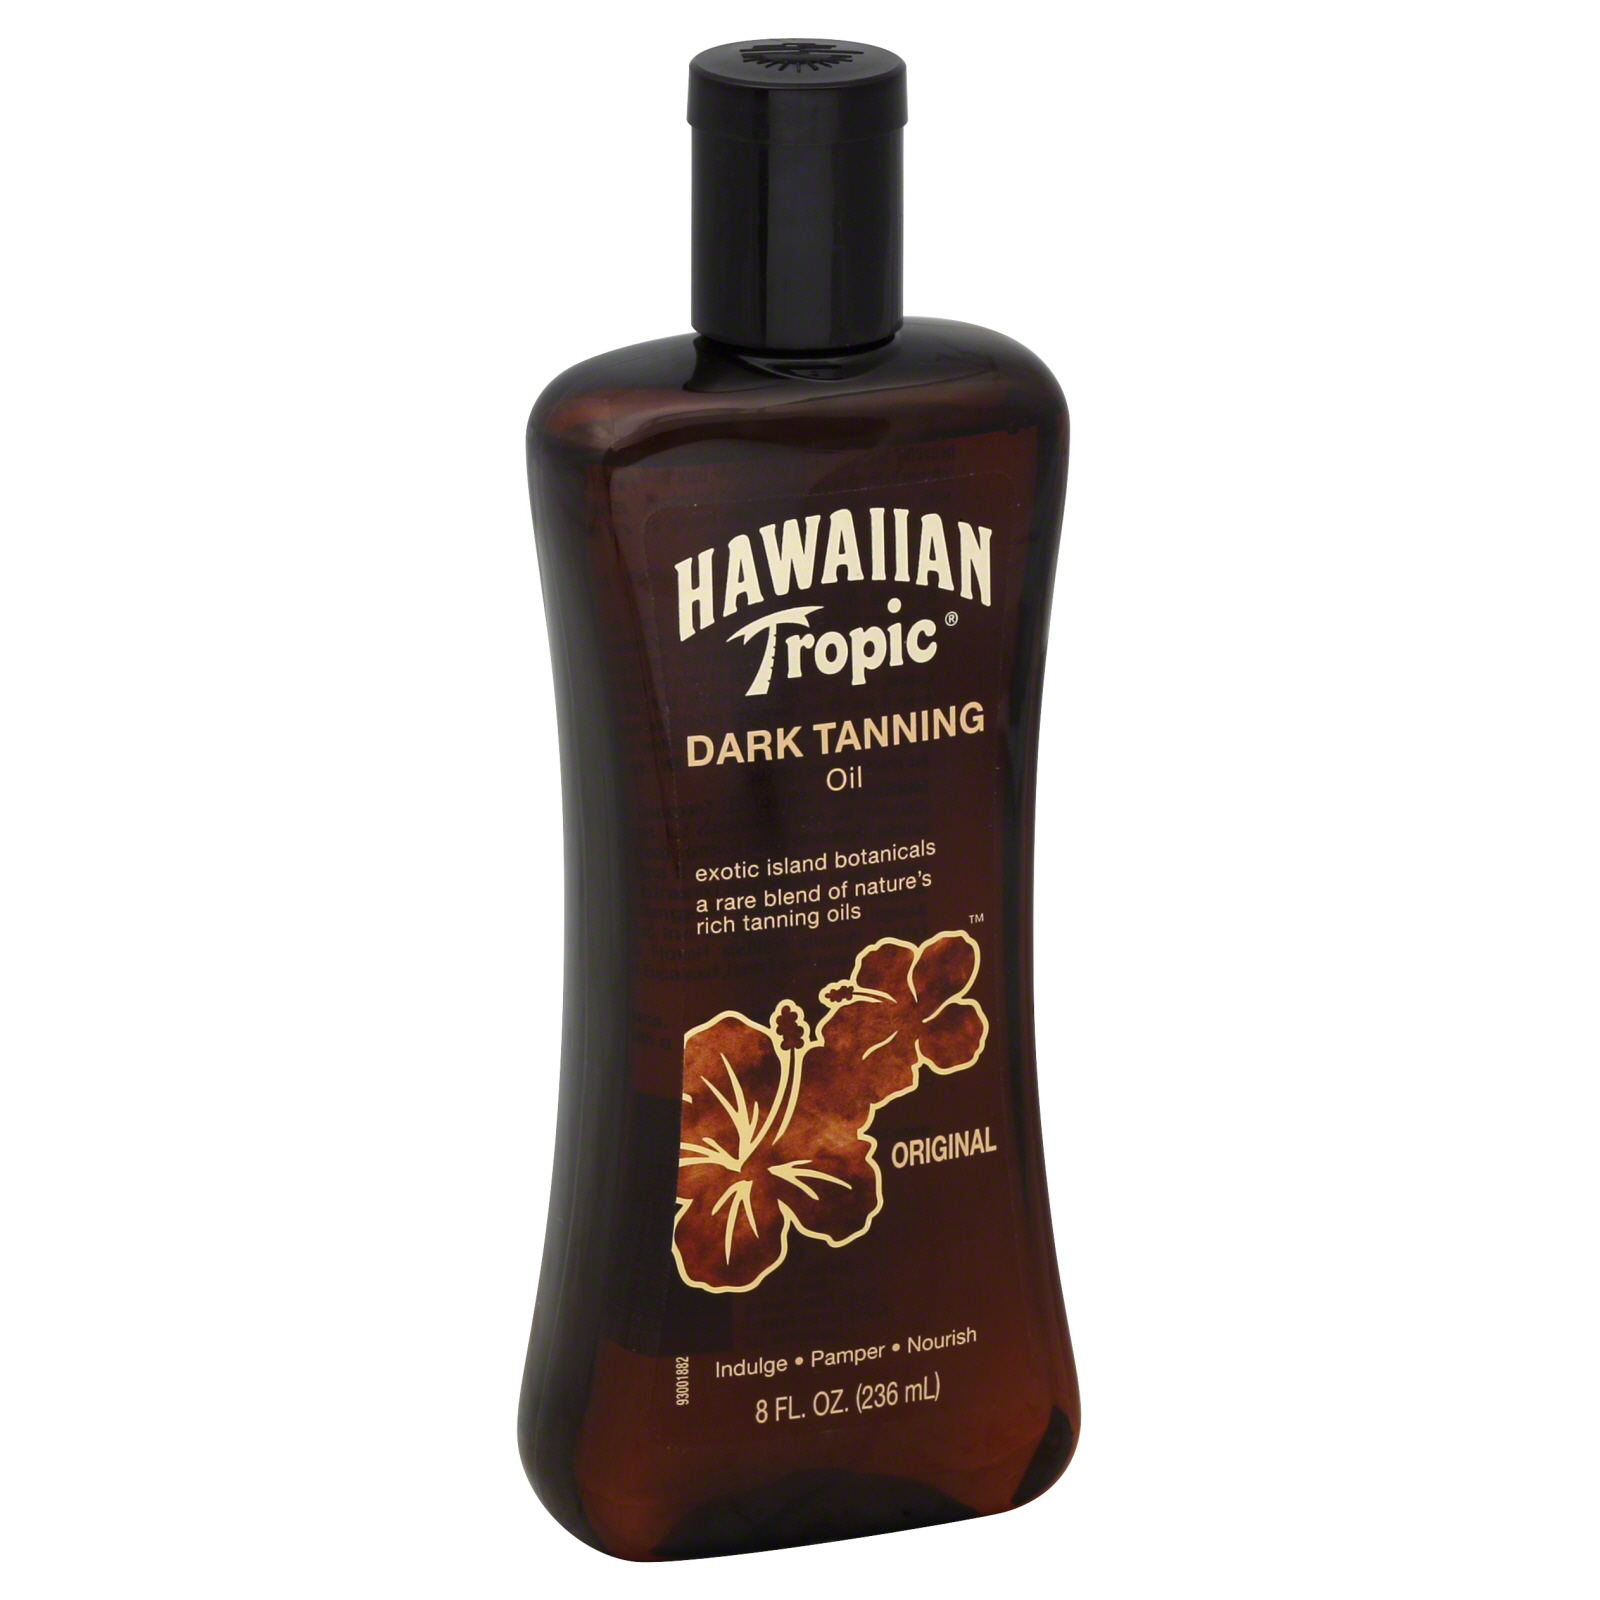 Hawaiian Tropic Tanning Oil, Dark, Original, 8 fl oz (237 ml)